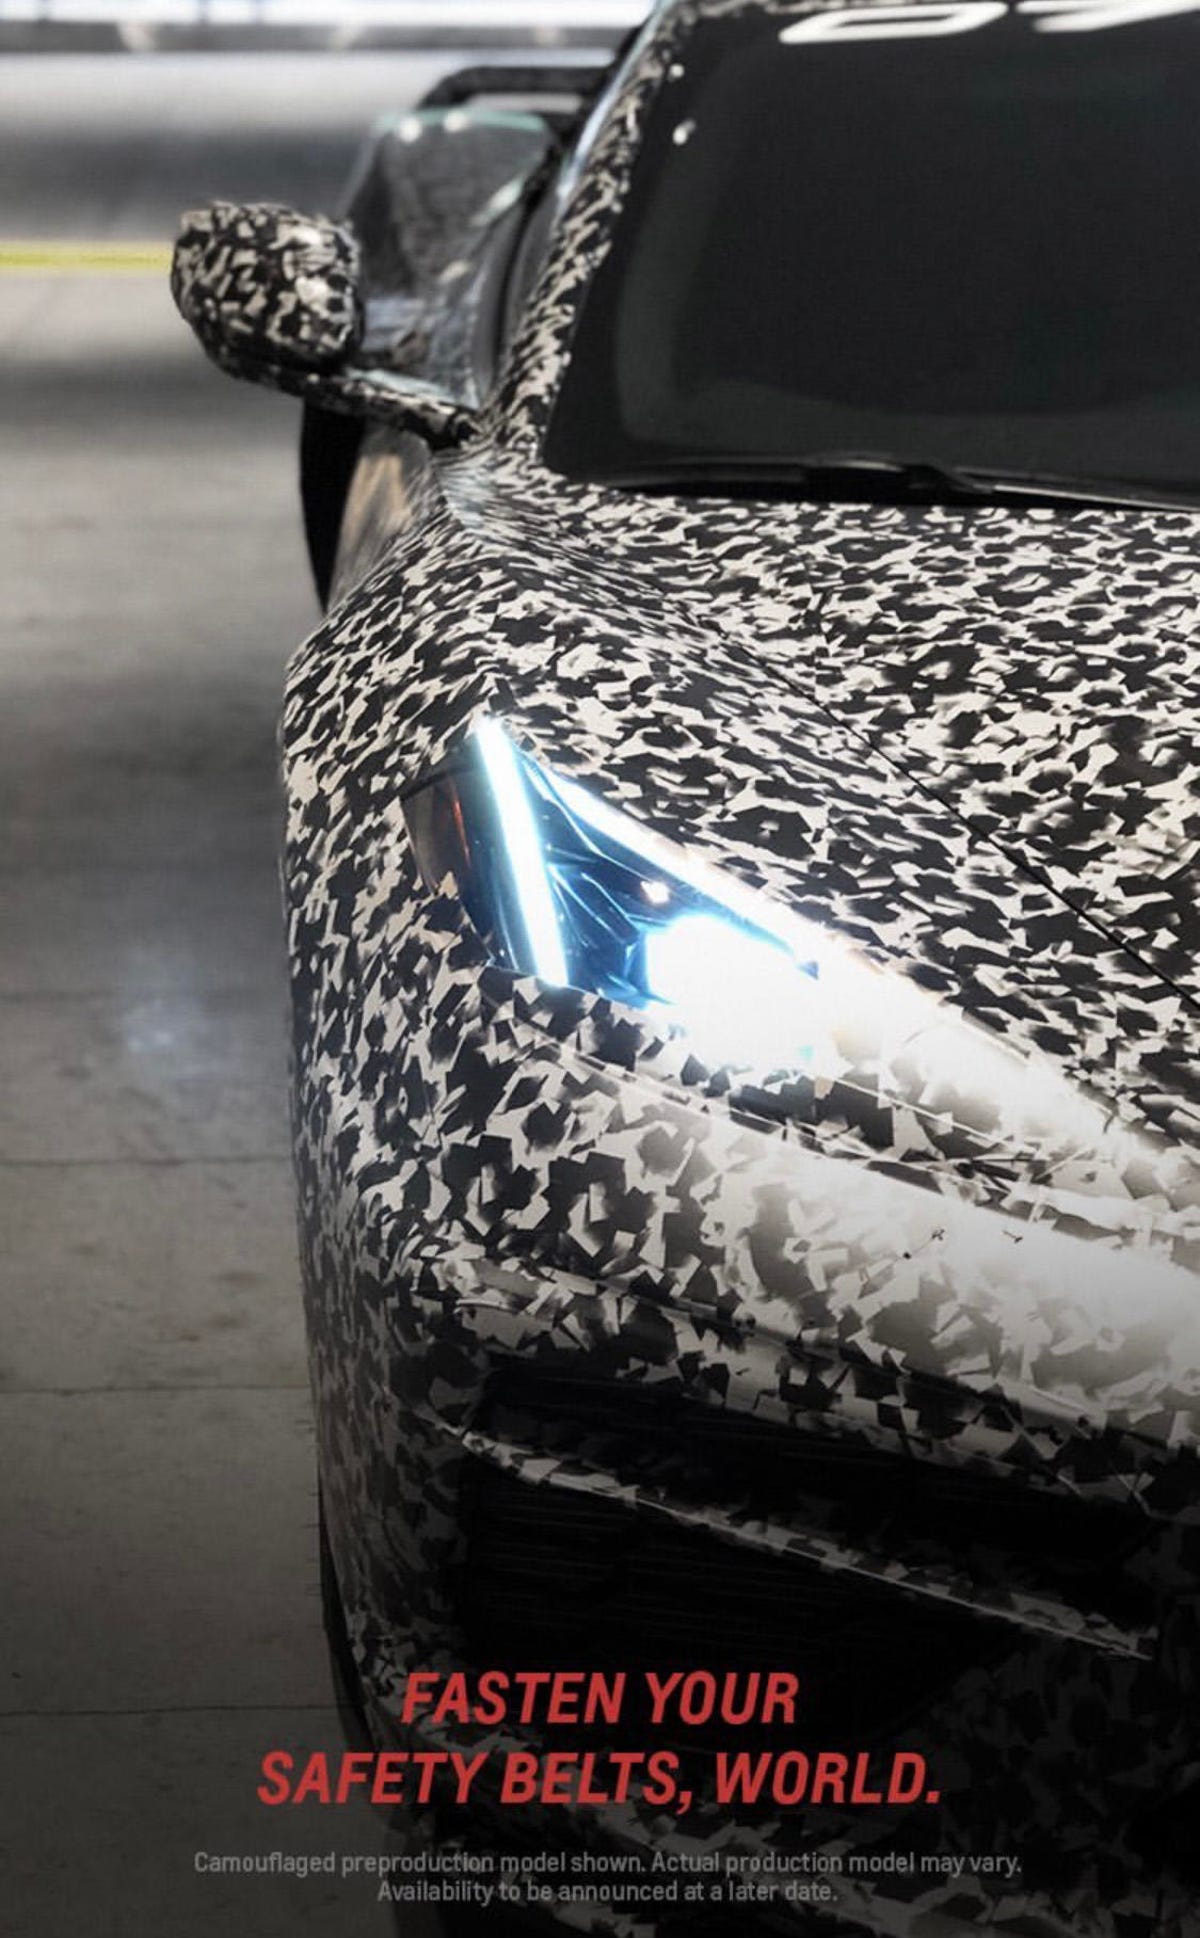 2020 Chevy Corvette teaser image